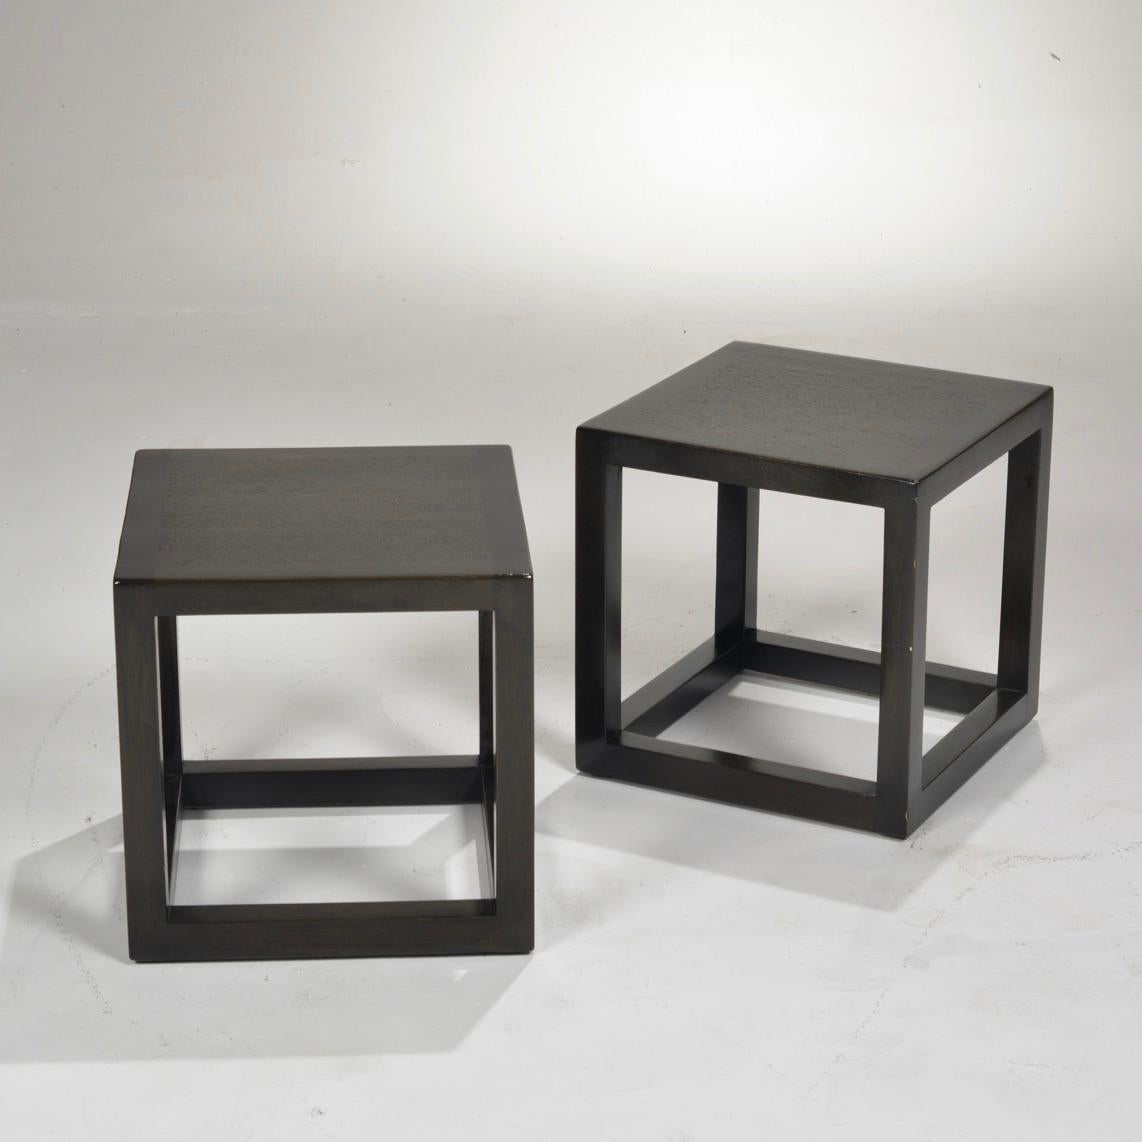 Ein Paar Mid-Century Modern End- oder Beistelltische von Dunbar Furniture in einer espressobraun lackierten Ausführung.

  


      